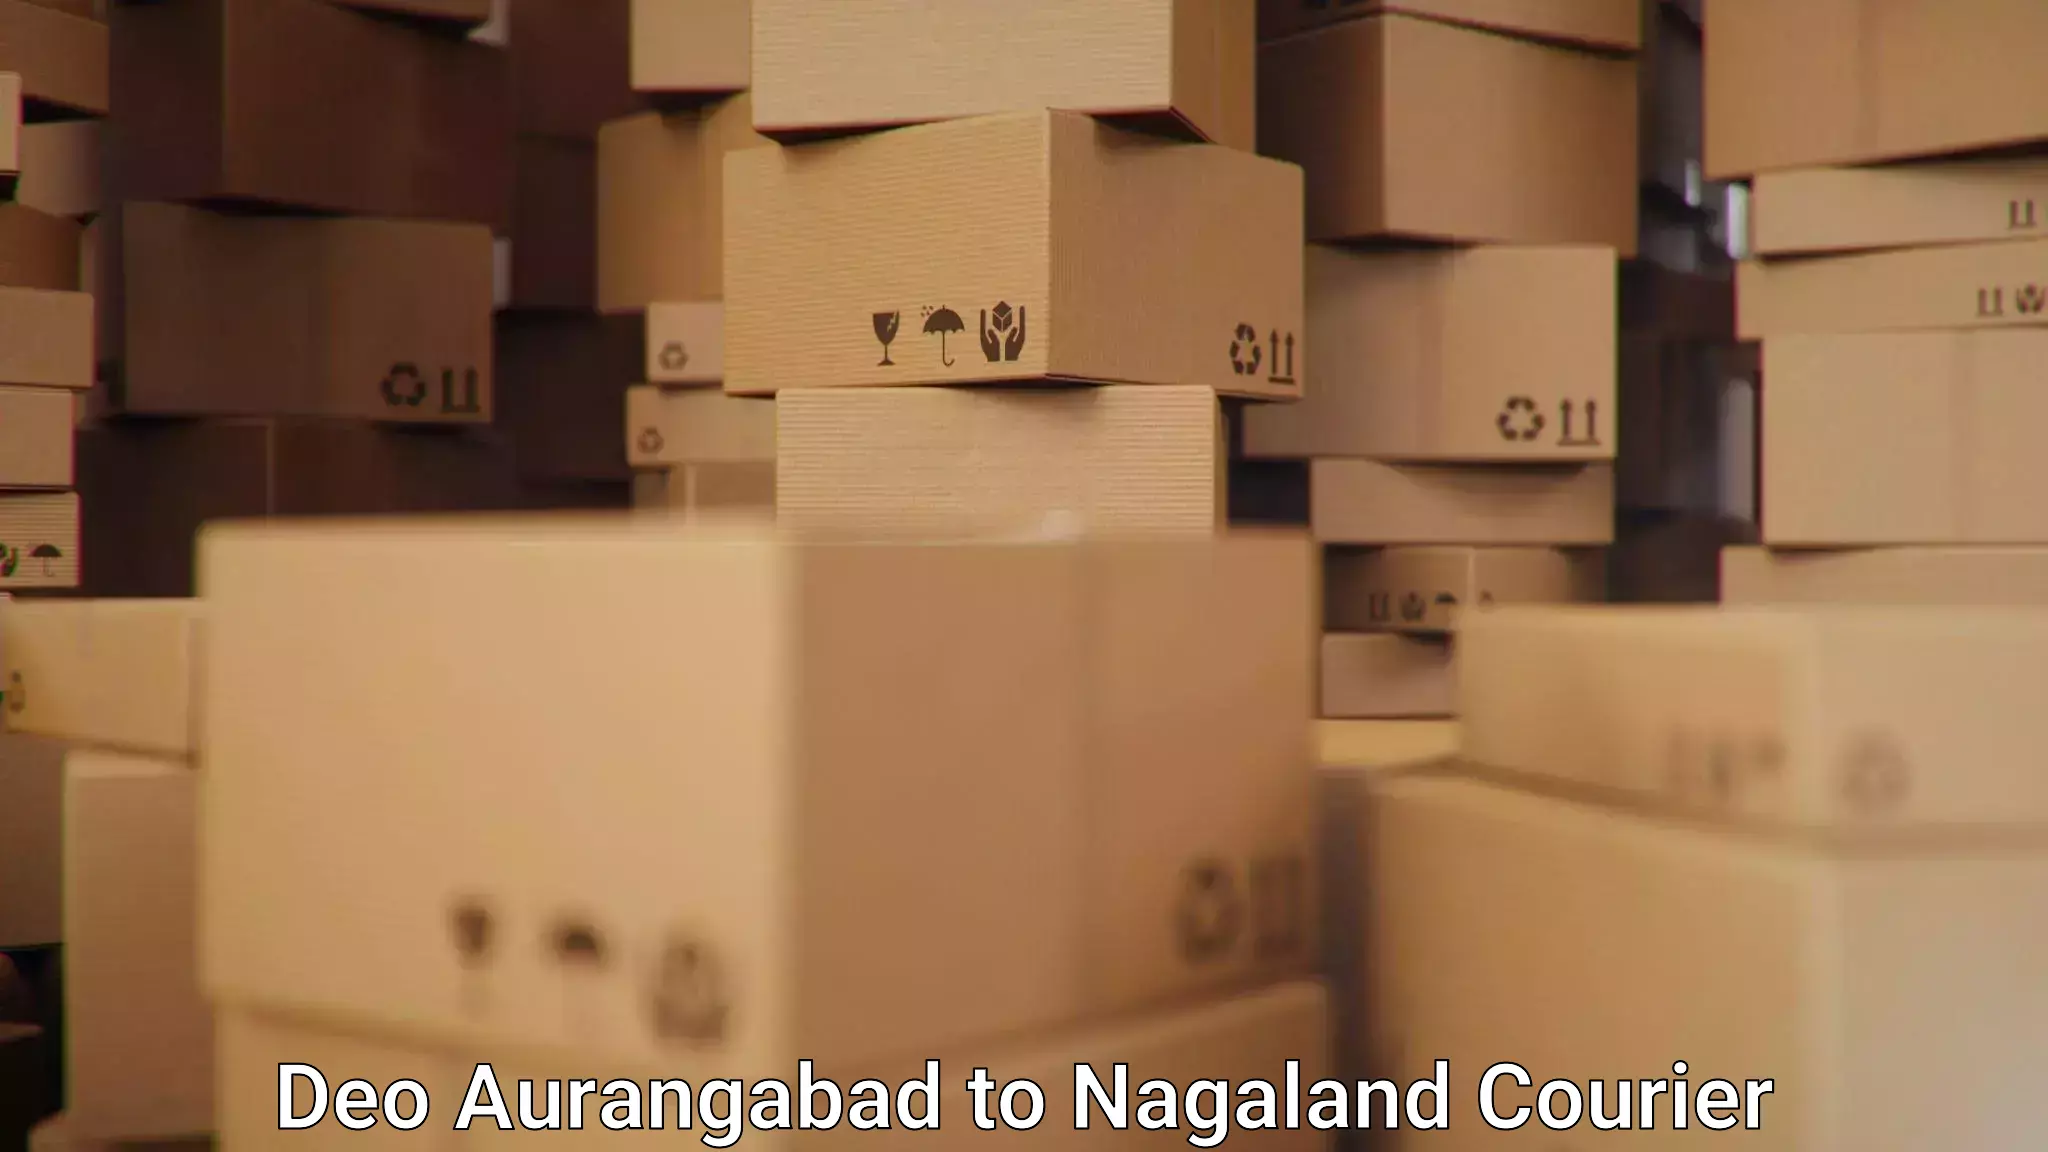 Premium courier services Deo Aurangabad to Nagaland